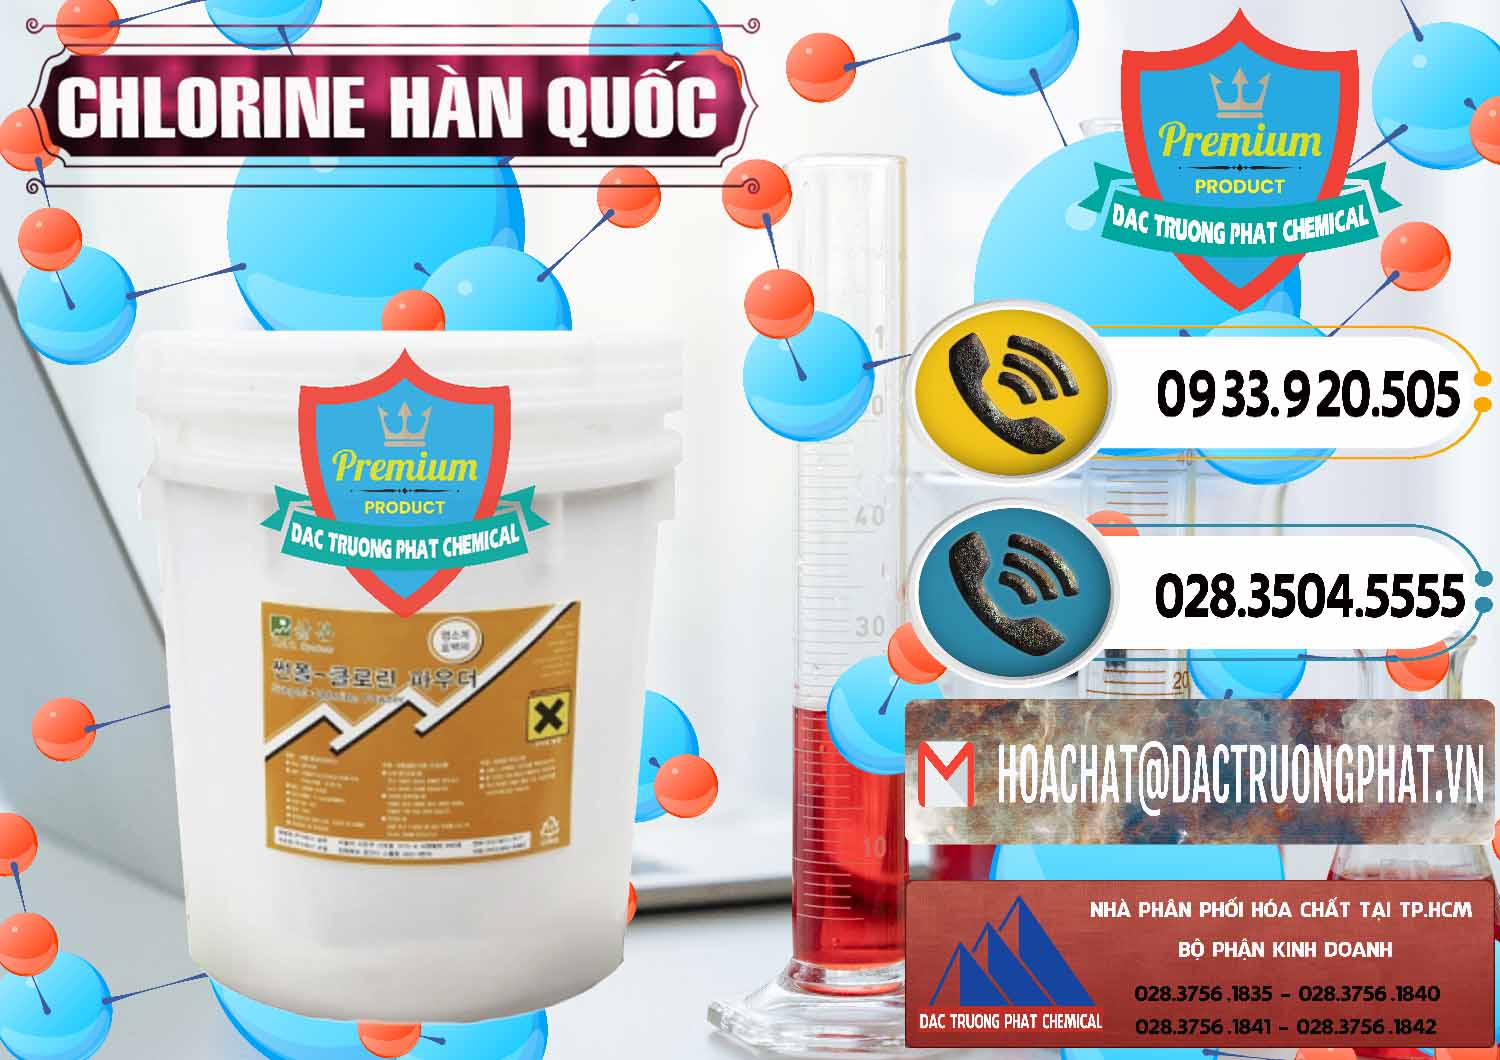 Nơi bán và phân phối Chlorine – Clorin 70% Hàn Quốc Korea - 0345 - Công ty phân phối và cung cấp hóa chất tại TP.HCM - hoachatdetnhuom.vn